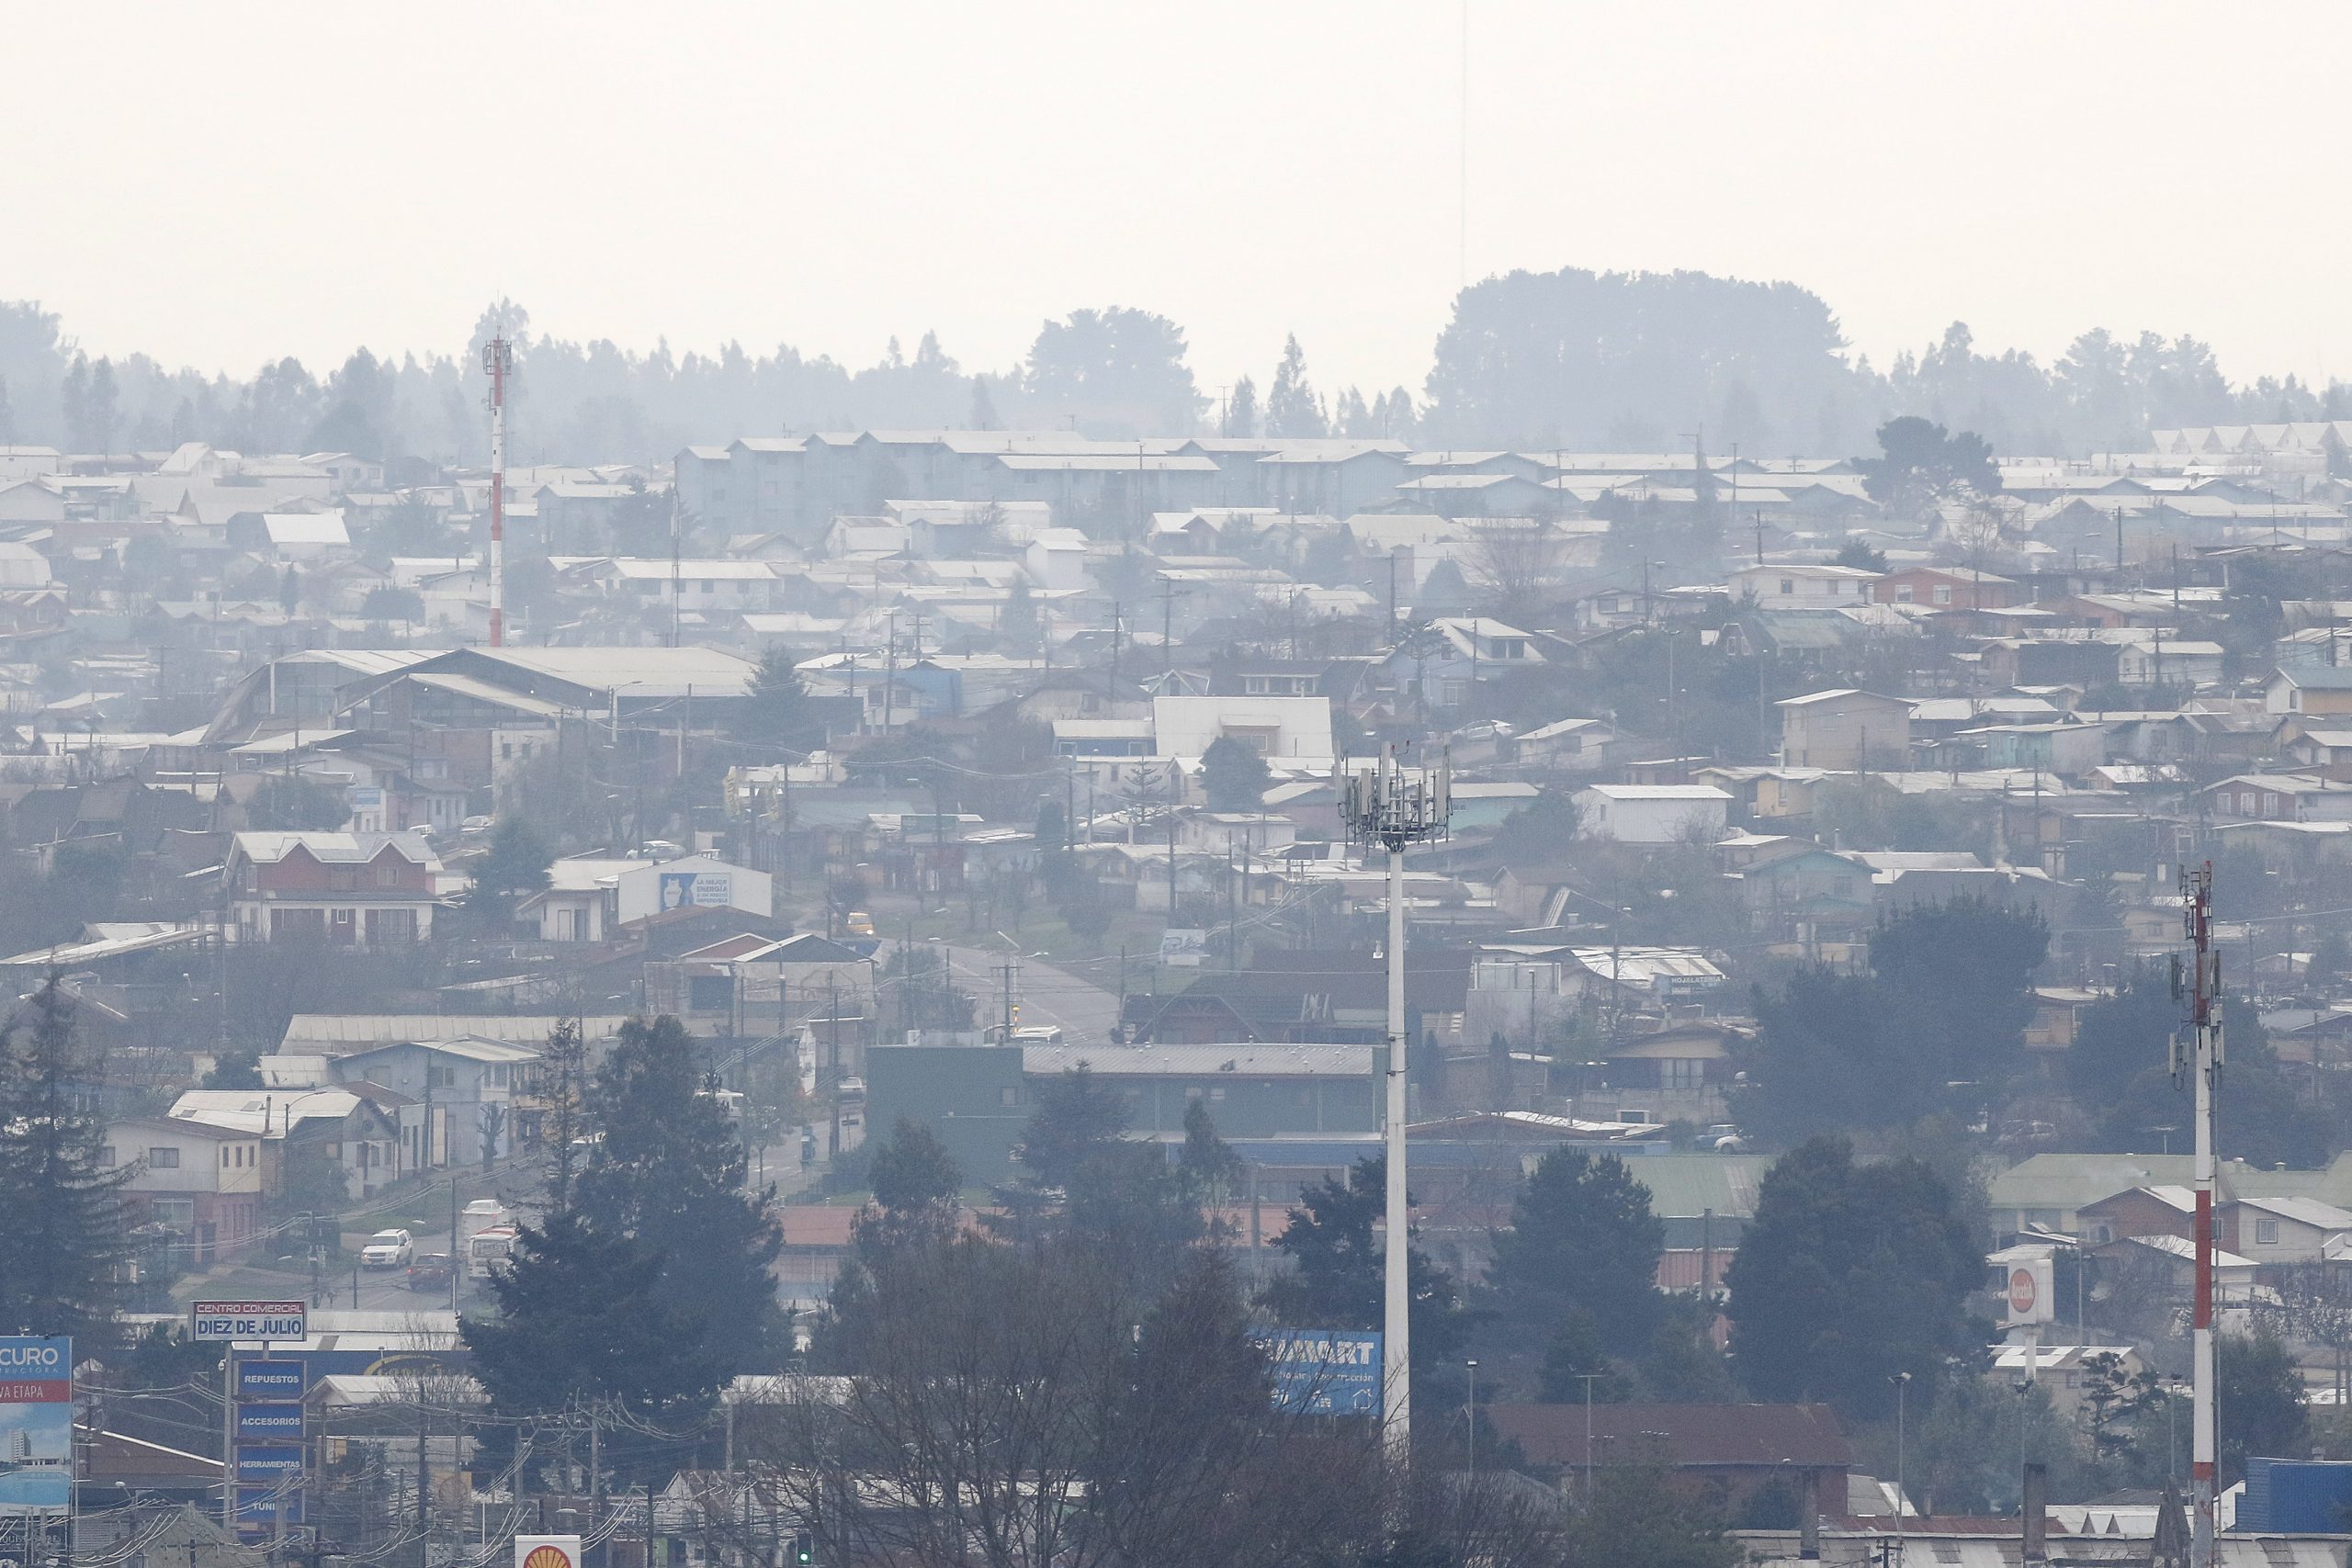 Sectores populares de Coyhaique son los más afectados por episodios críticos de contaminación